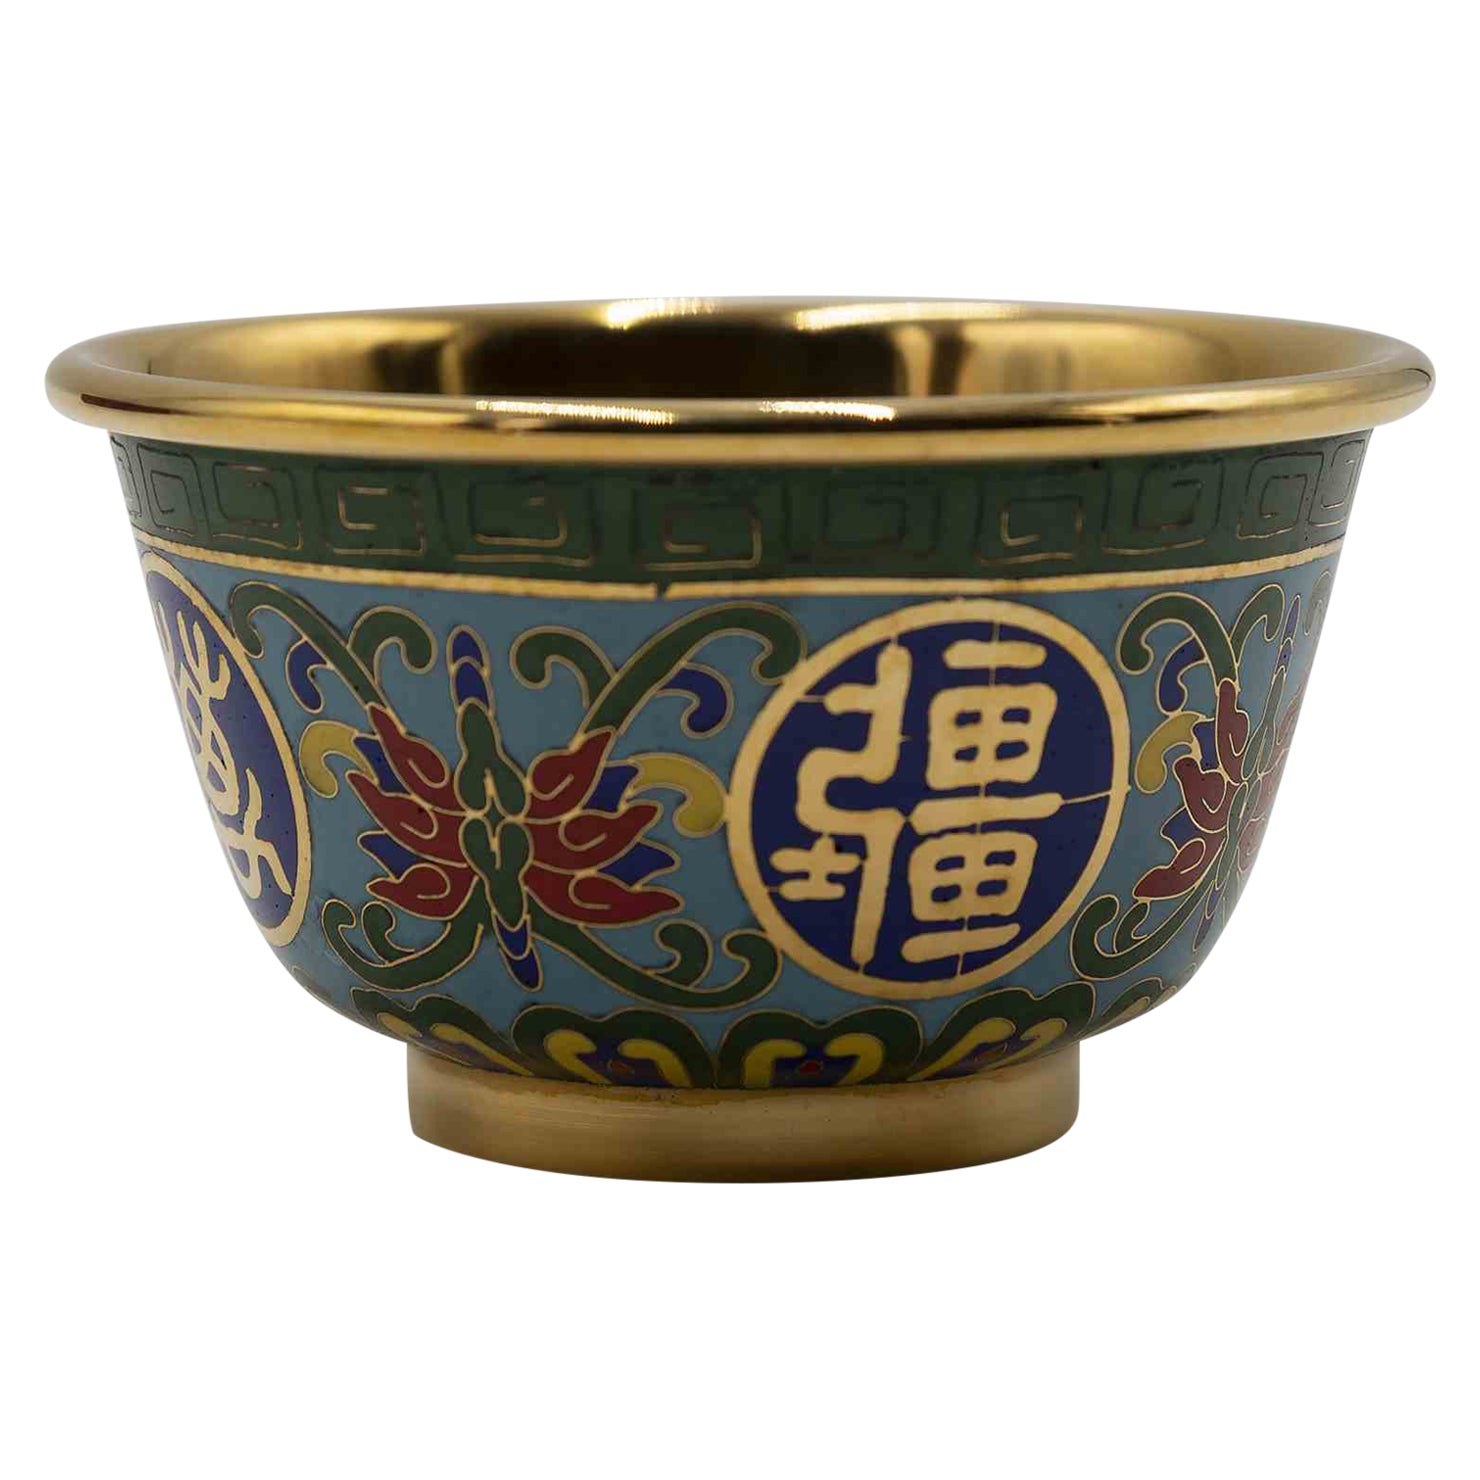 Chinesischer Pokal, 1990er Jahre